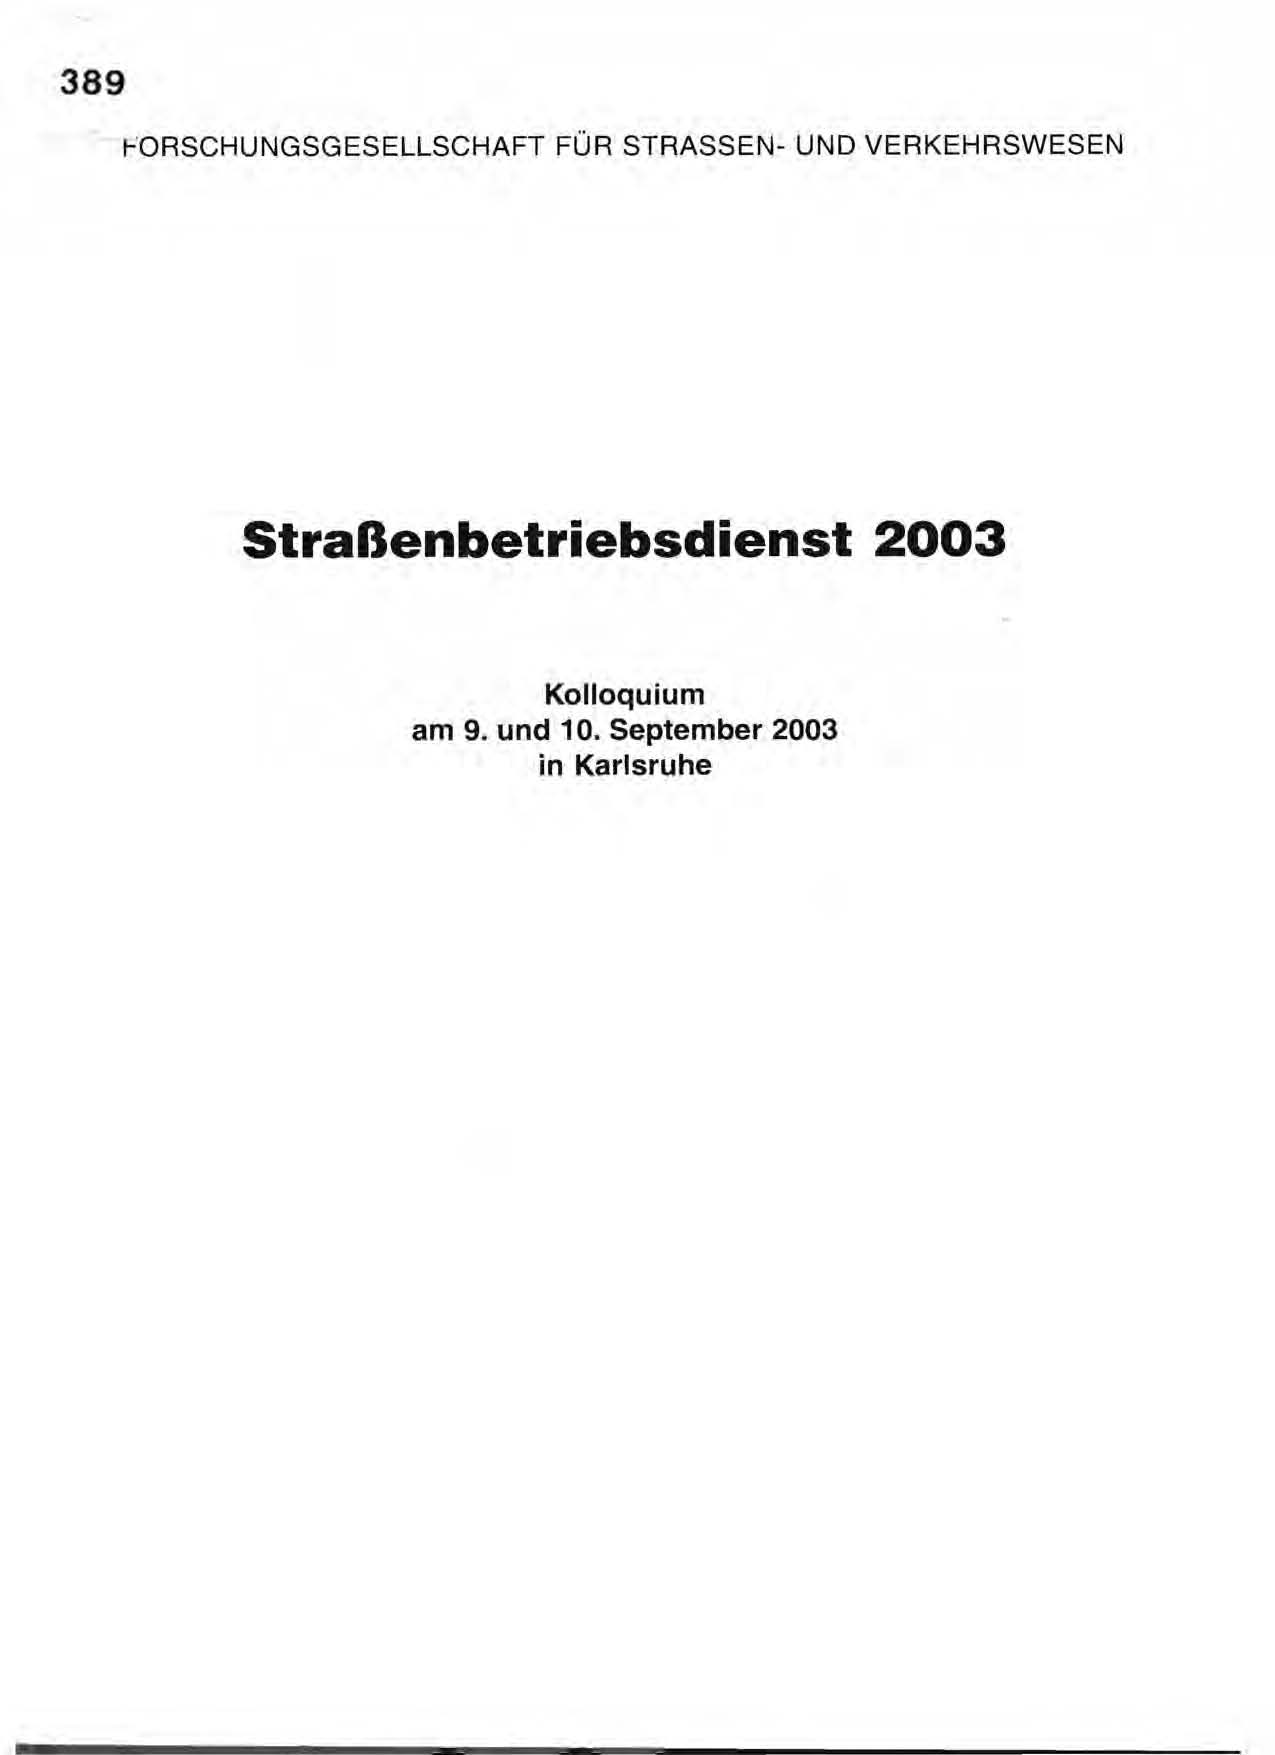 Straßenbetriebsdienst 2003